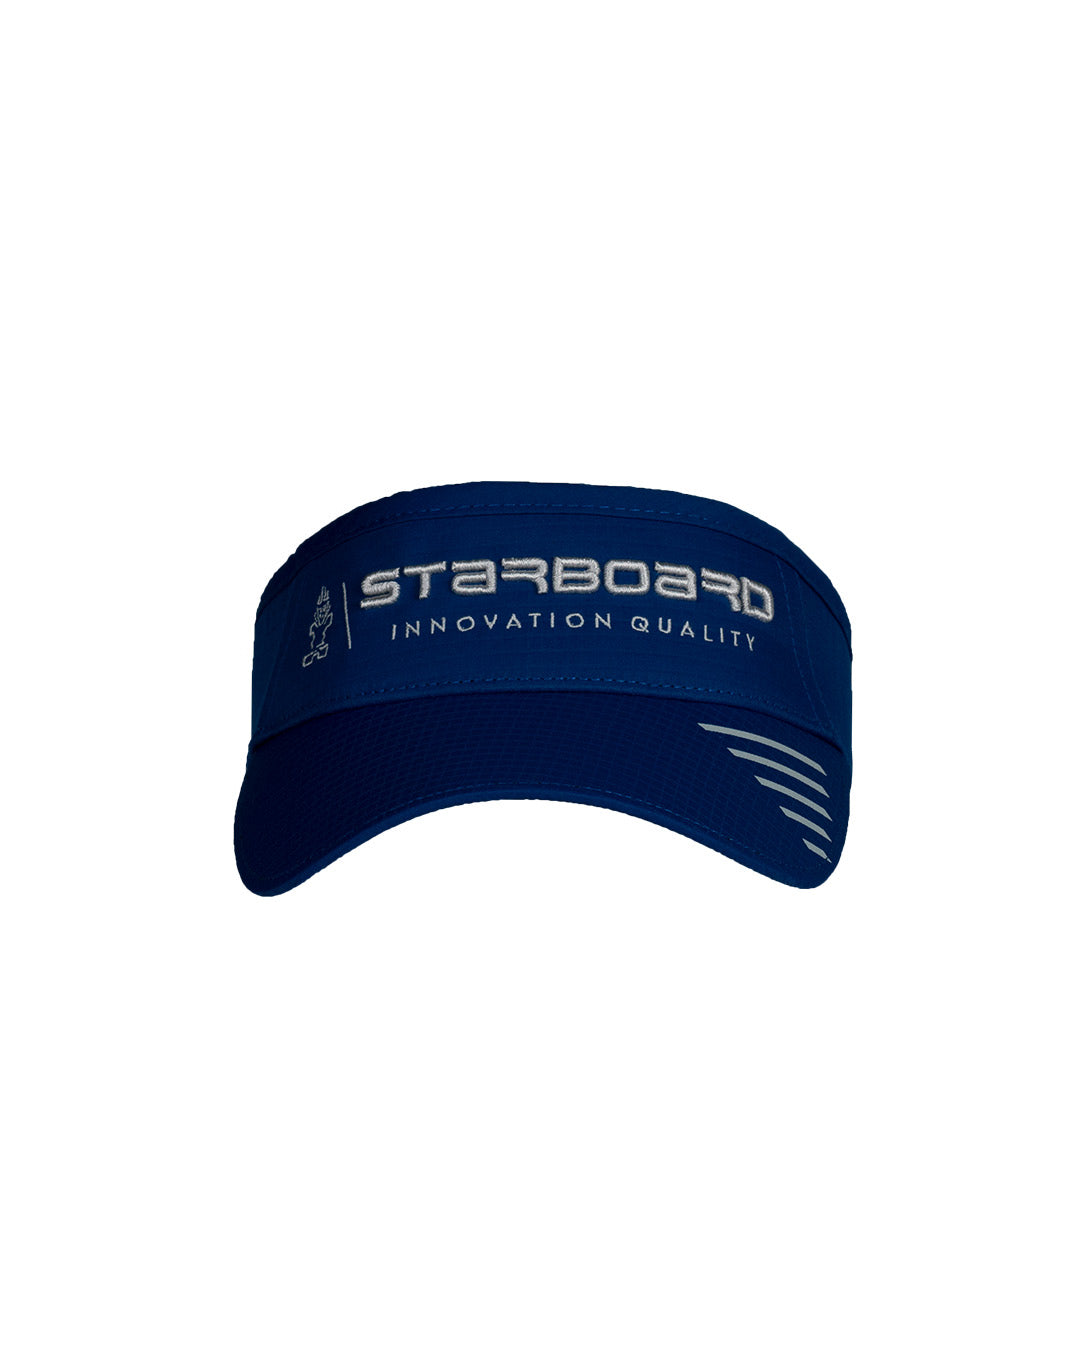 Starboard Performance Visor - Team Blue